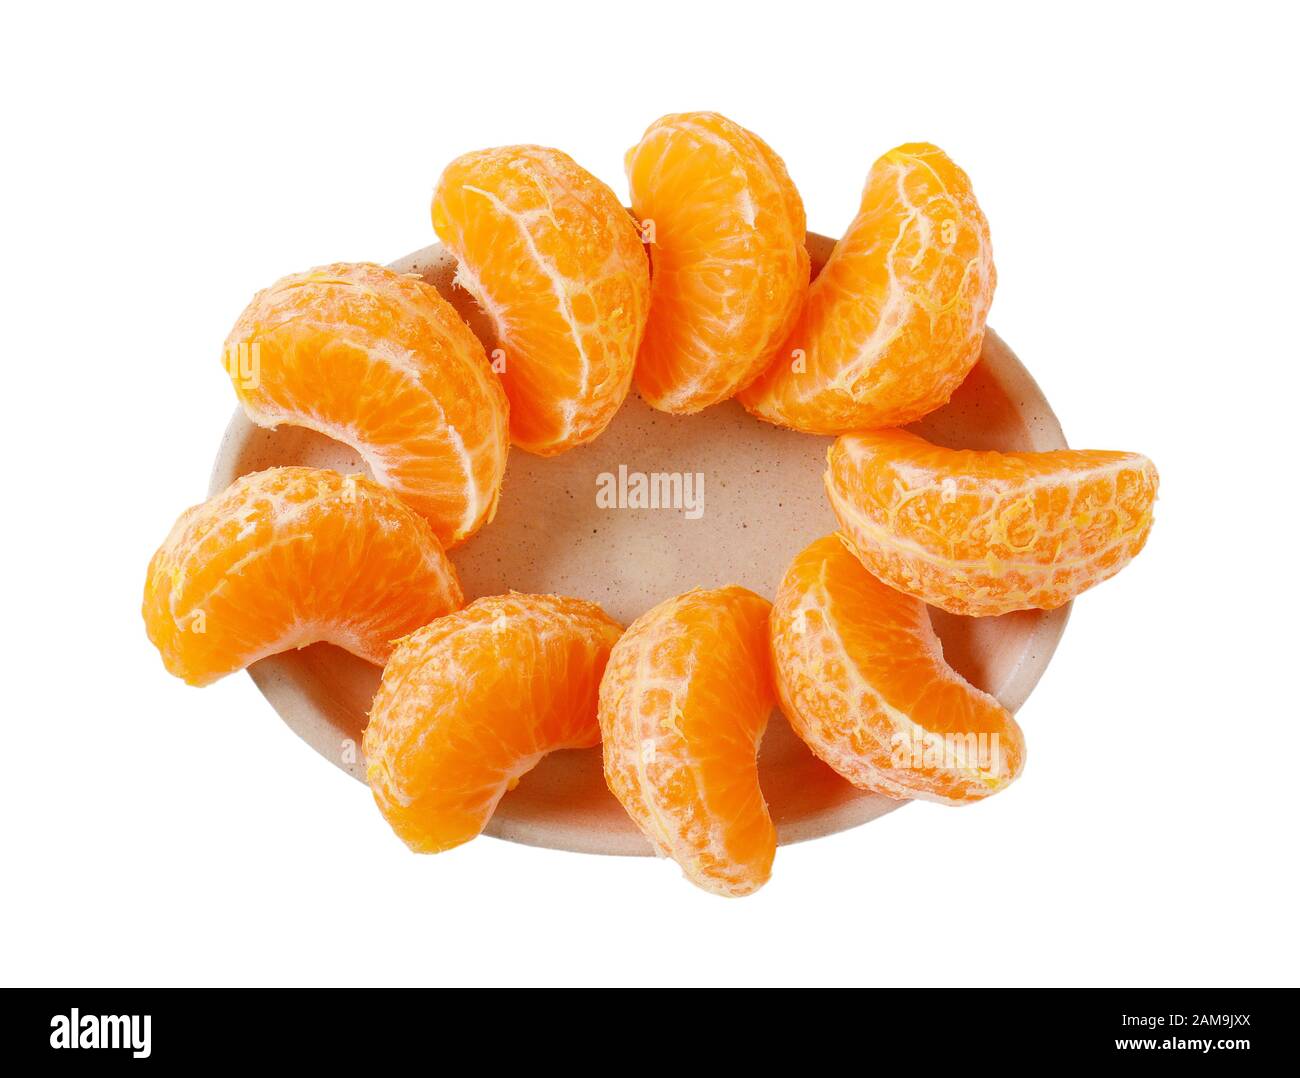 Assiette de tranches de mandarine fraîche sur fond blanc Banque D'Images